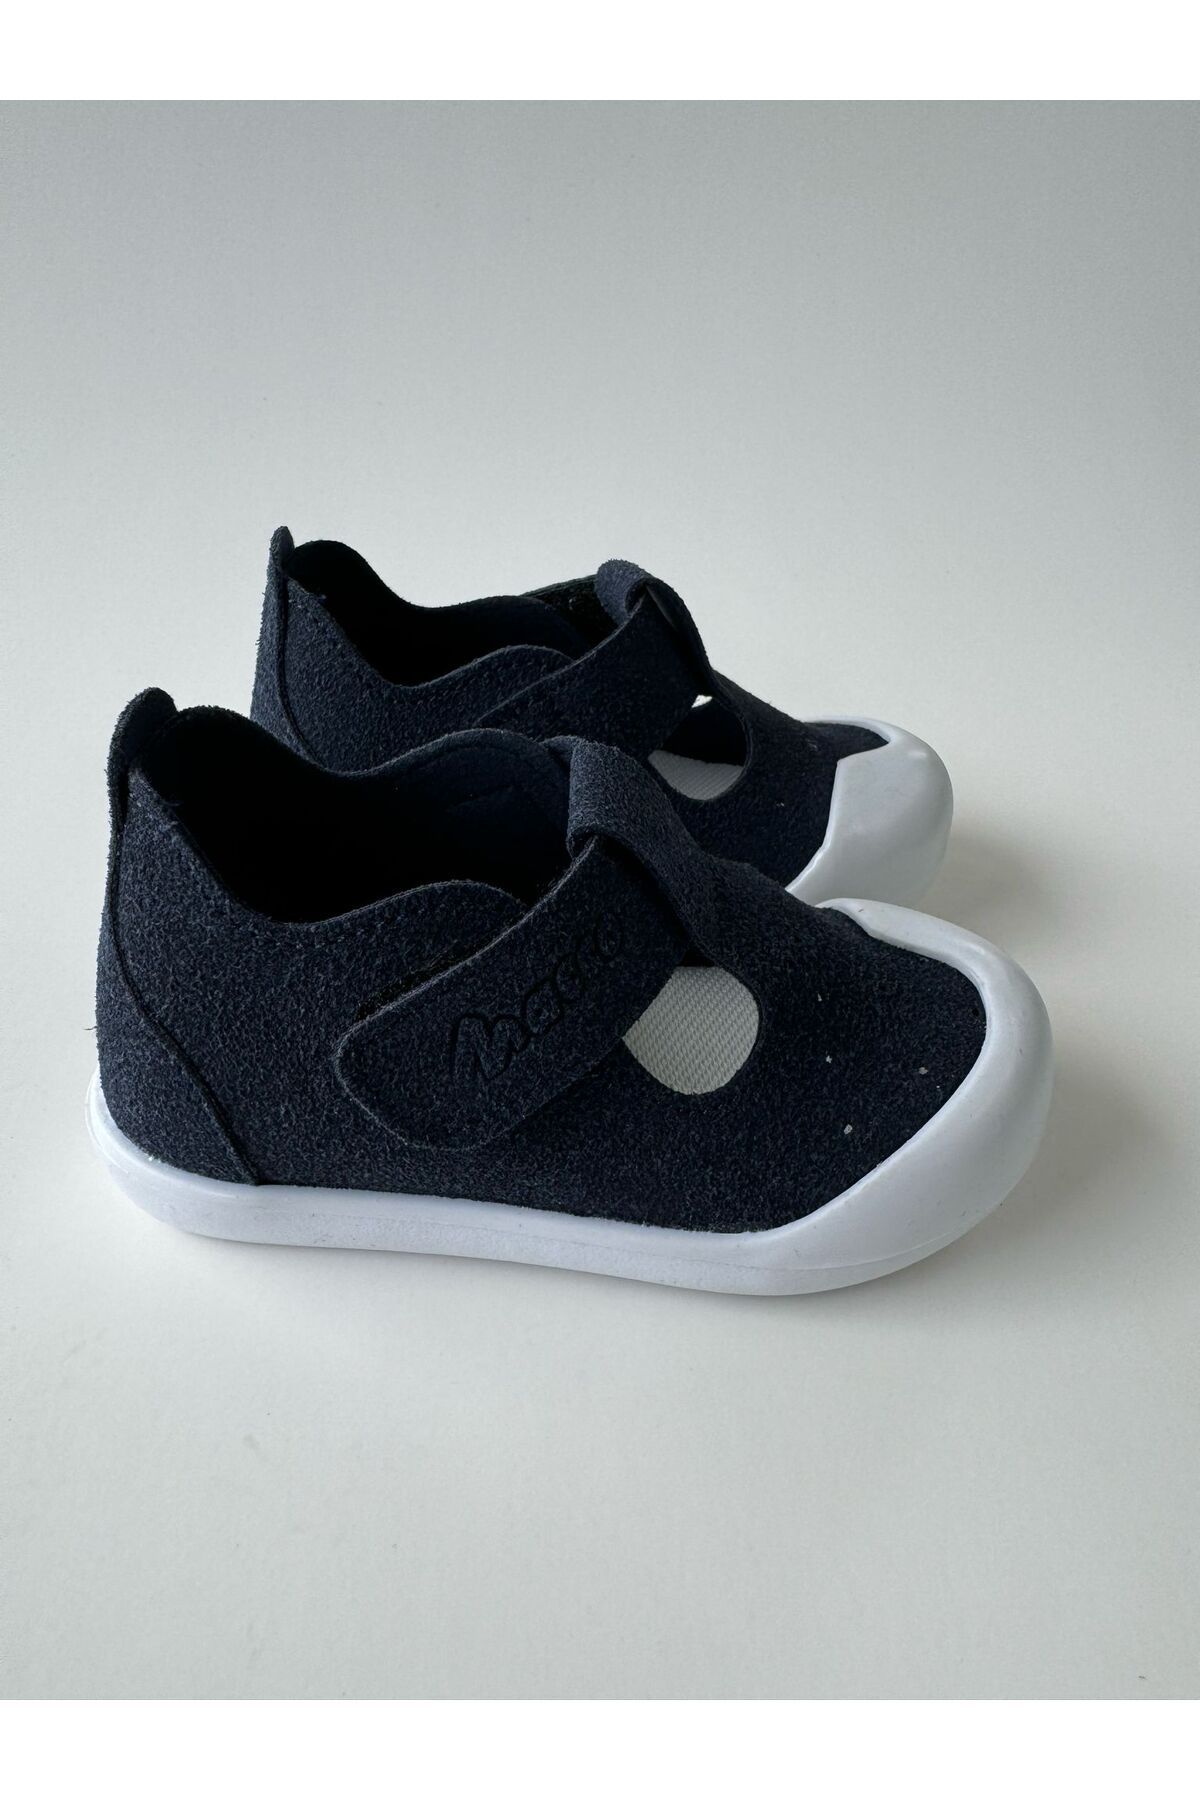 macco shoes İlkadım  Ortopedik Ayakkabı Kız Bebek Ayakkabı Erkek Bebek Ayakkabı